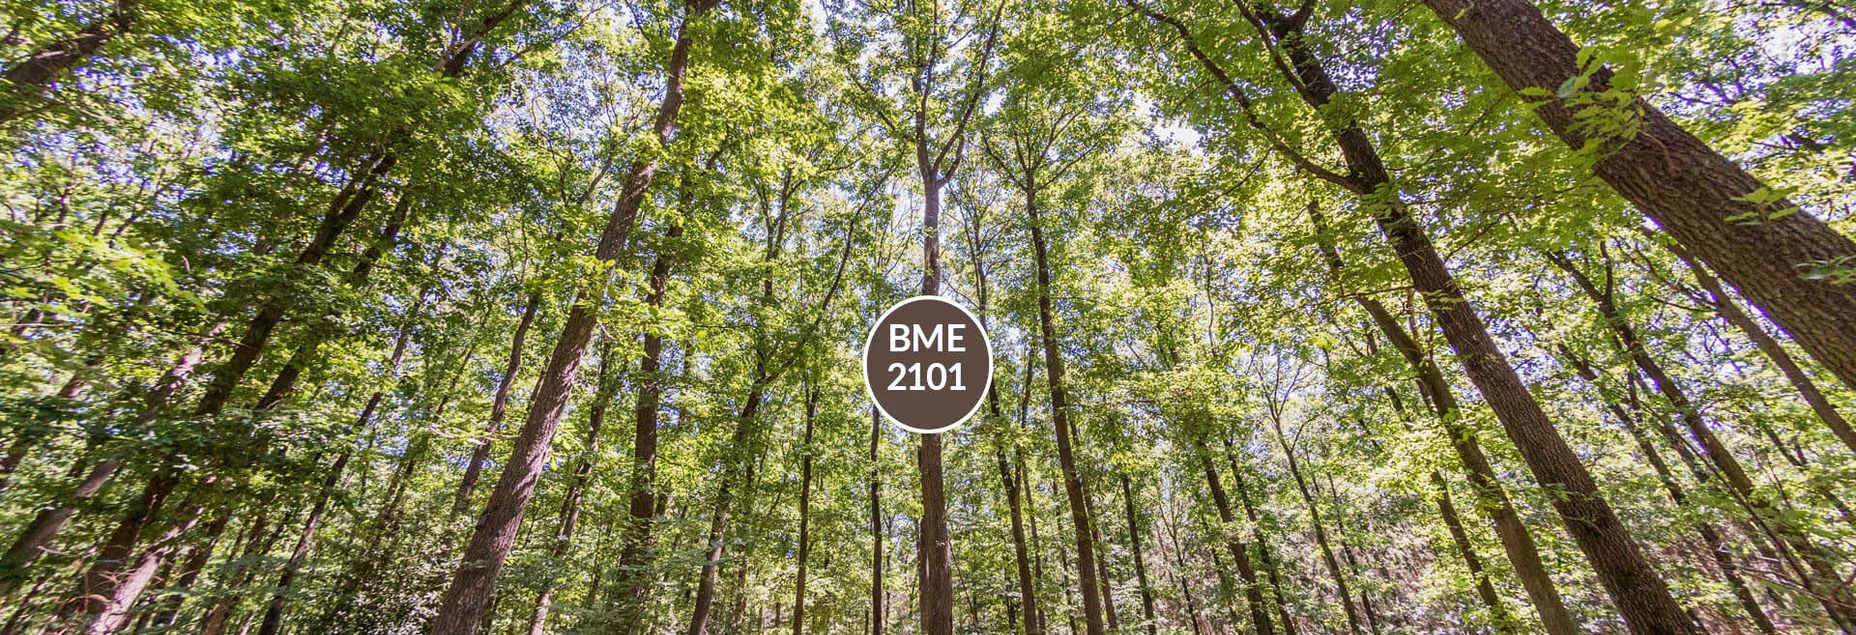 Baum BME 2101 - Fisheyeperspektive